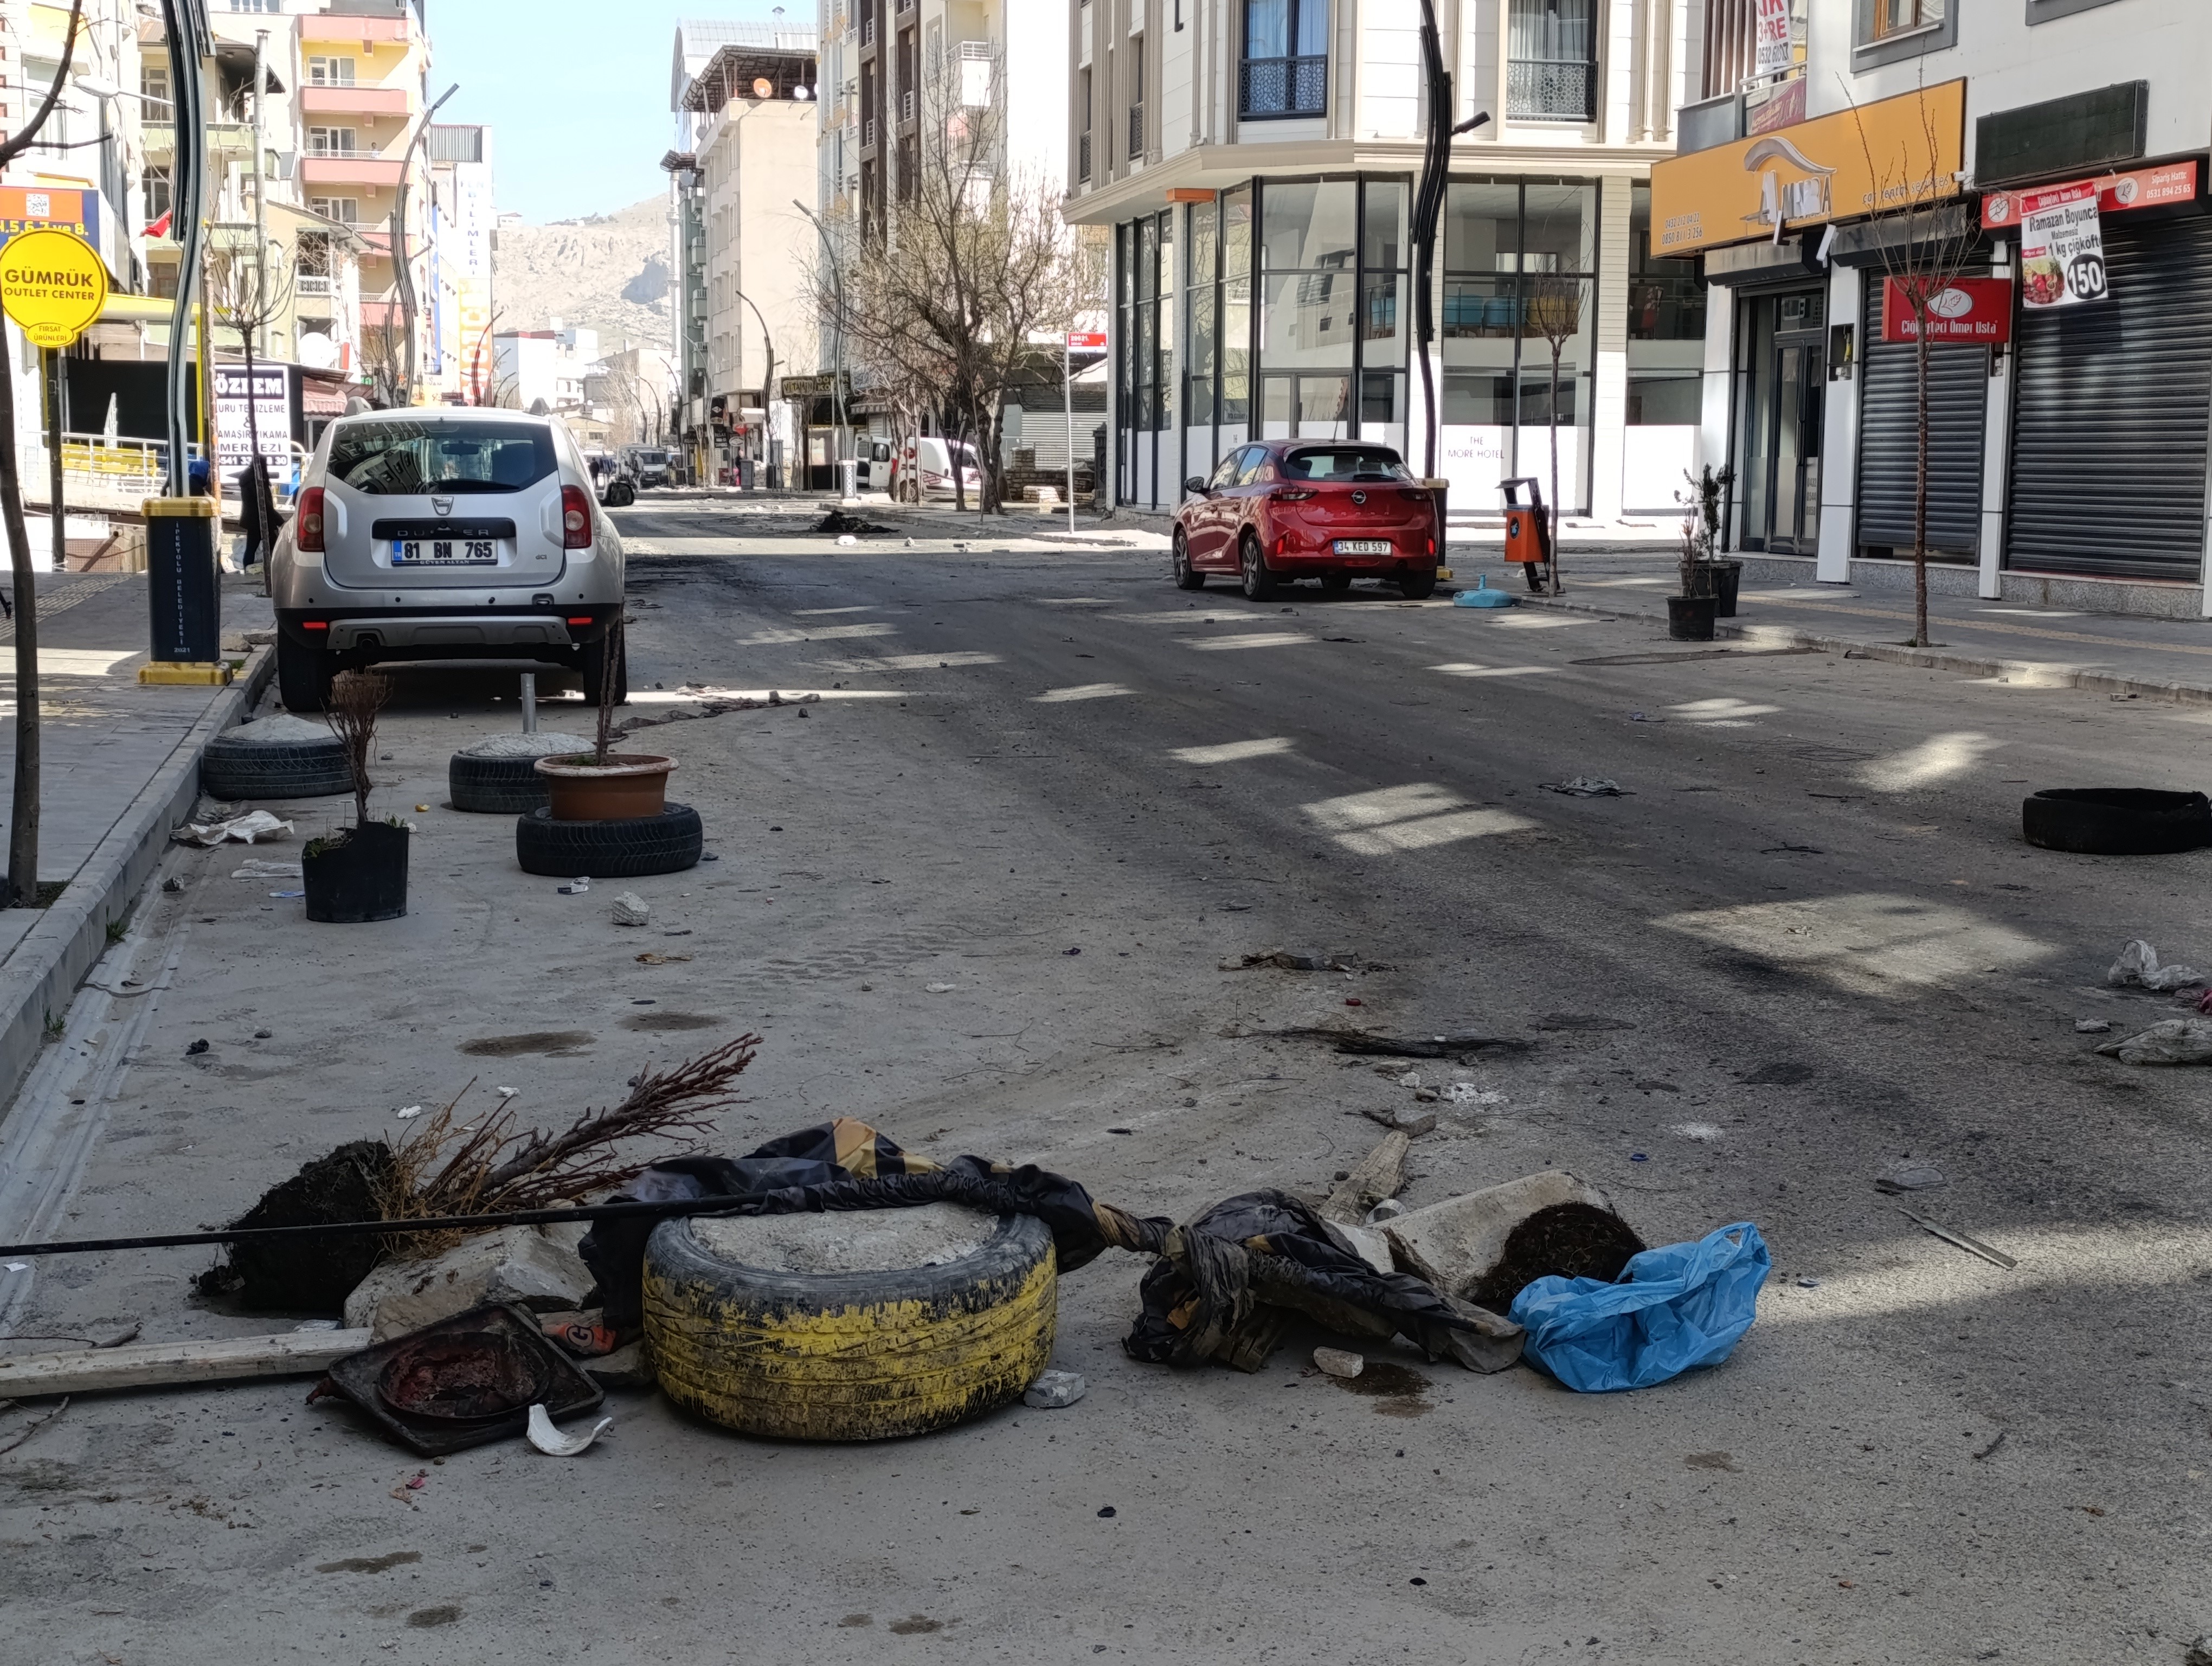 Olaylar Sonrası Sokakların Son Hali Görüntülendi4